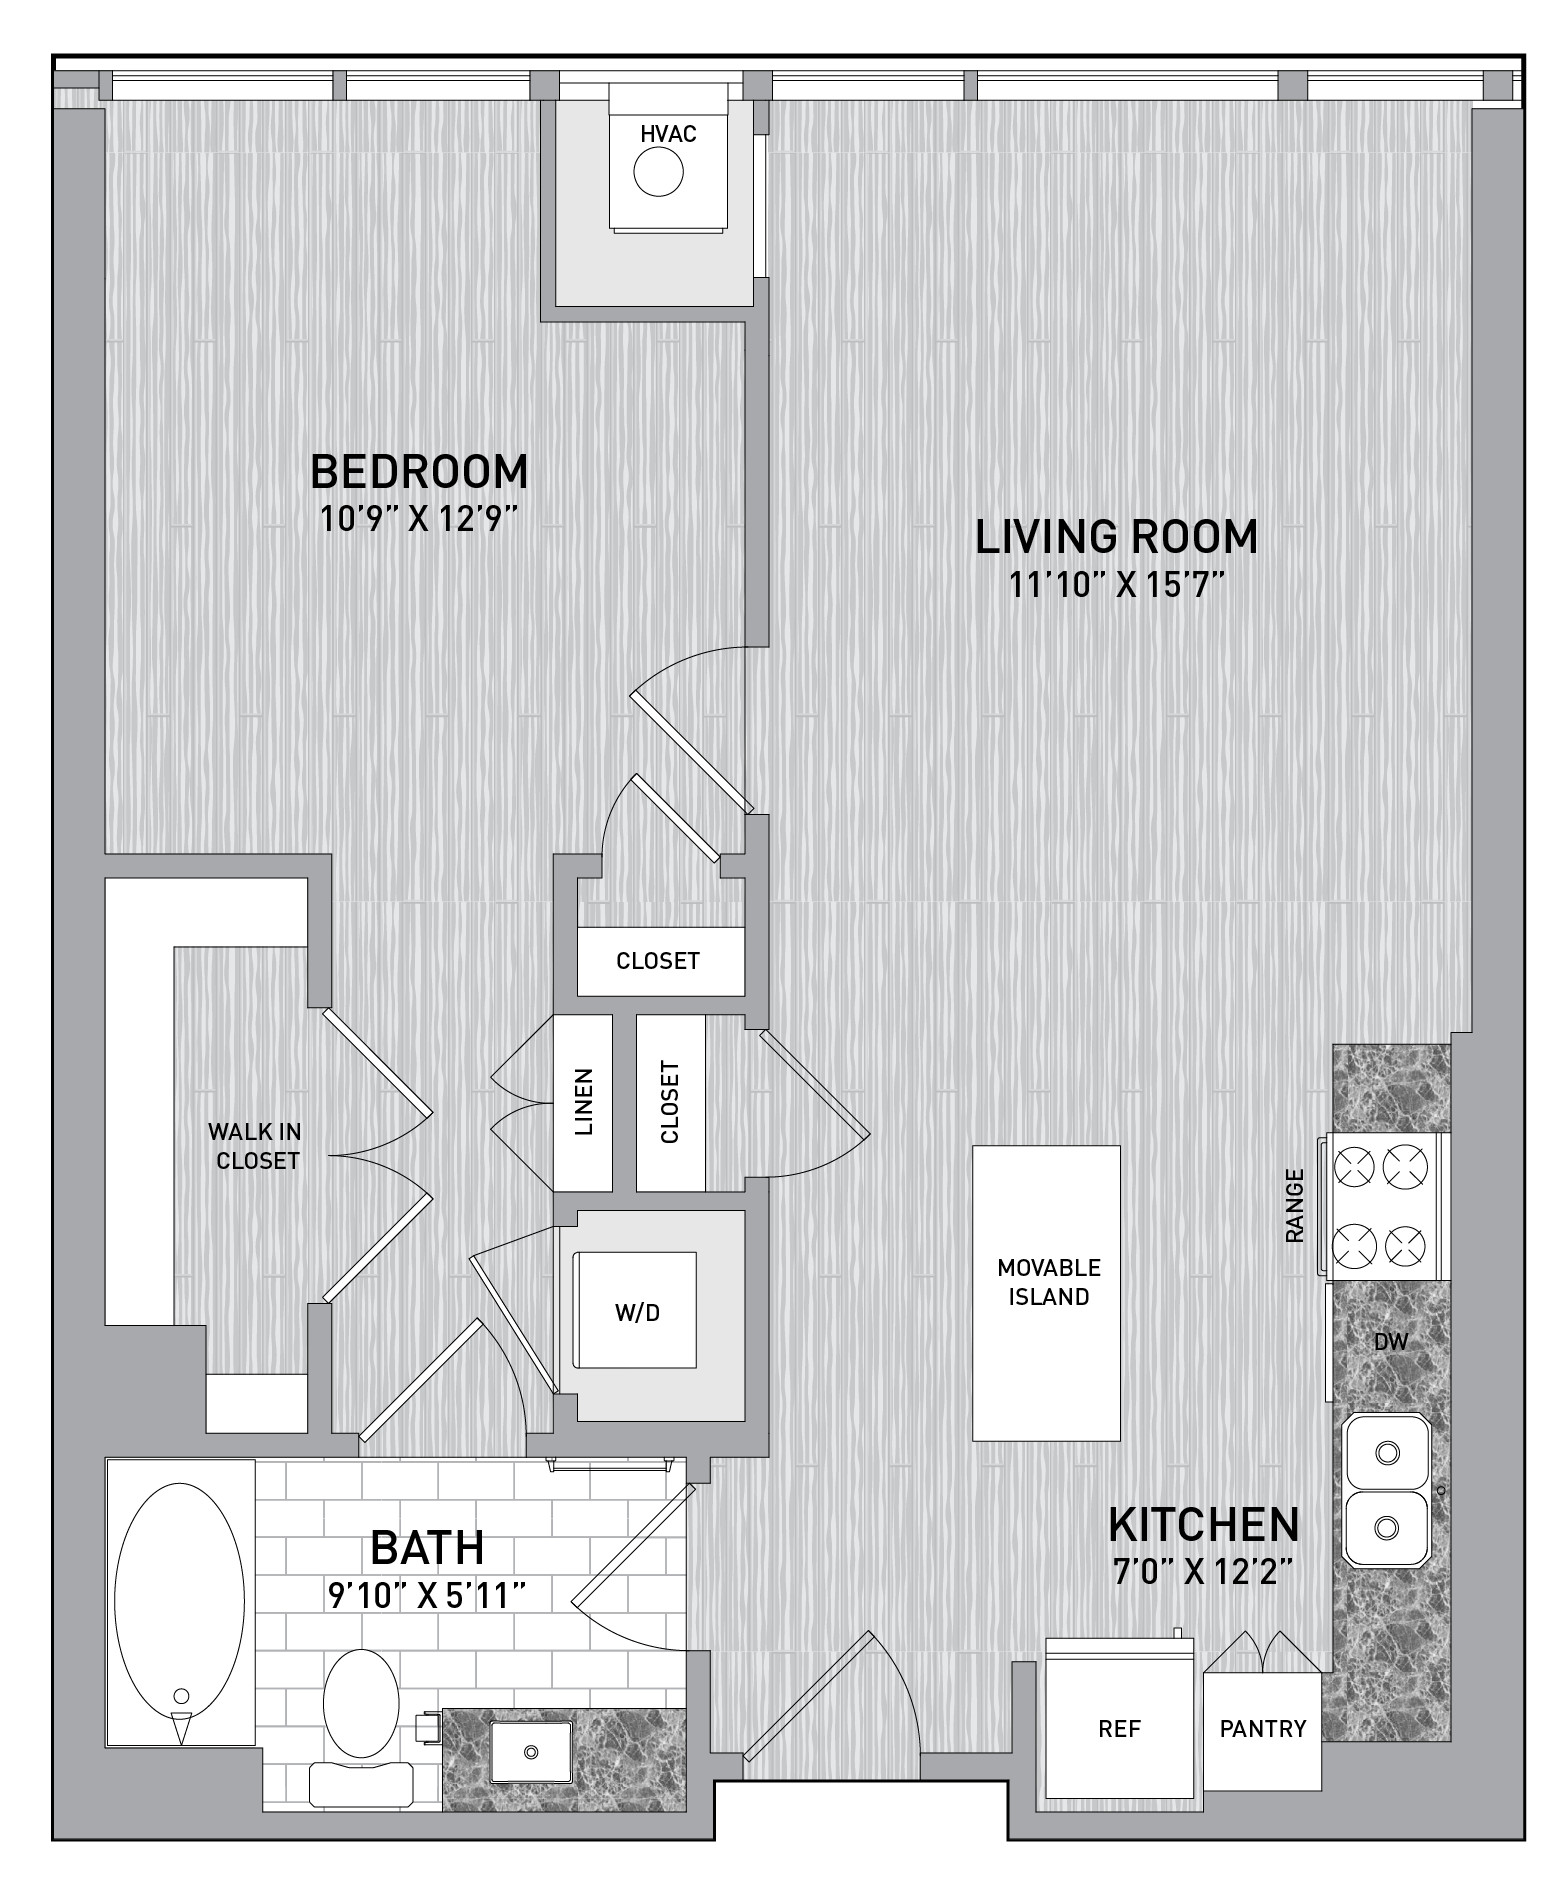 floorplan image of unit id 0215